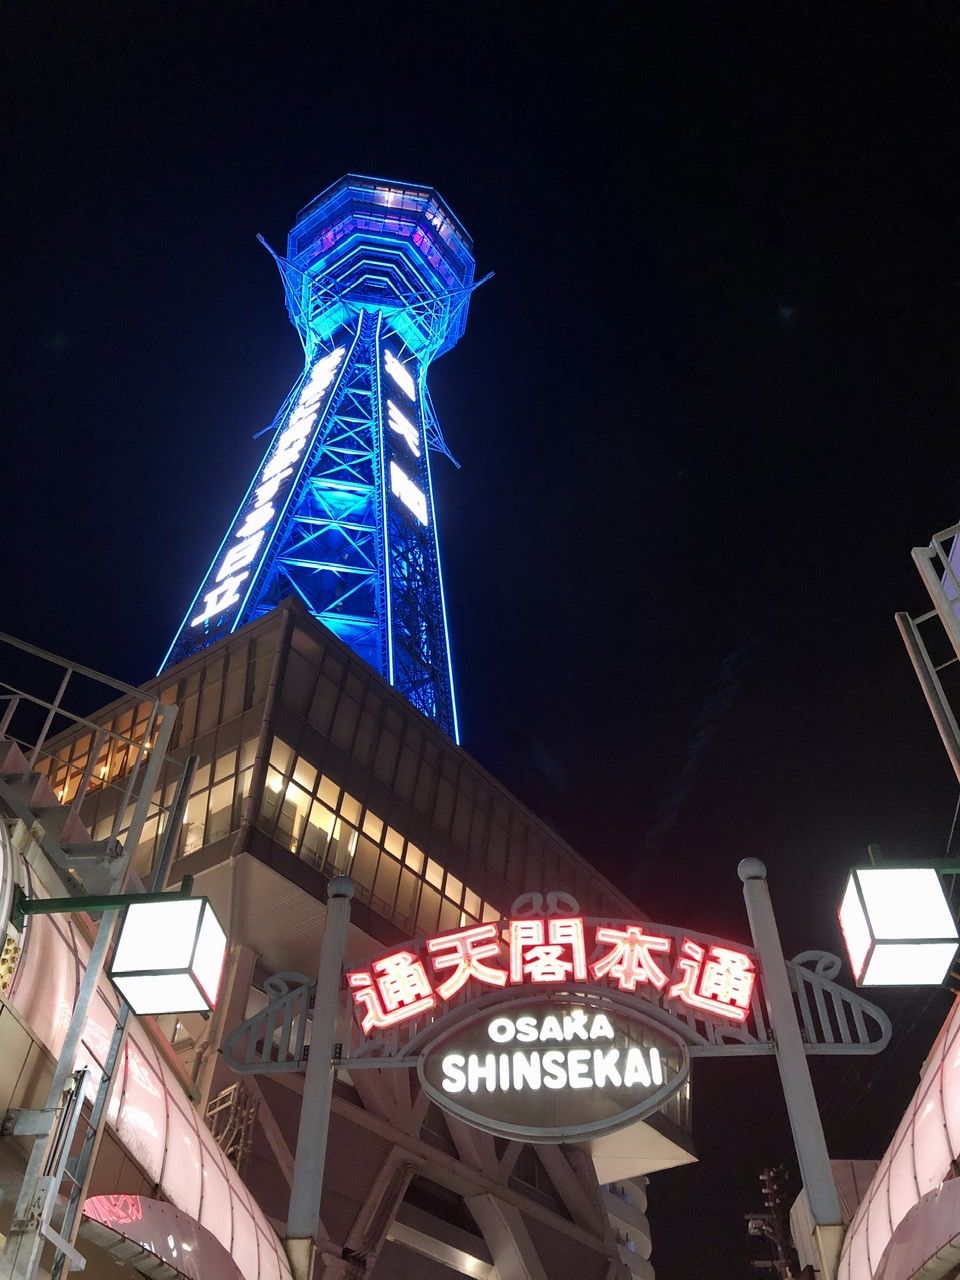 Tsutenkaku Tower at night